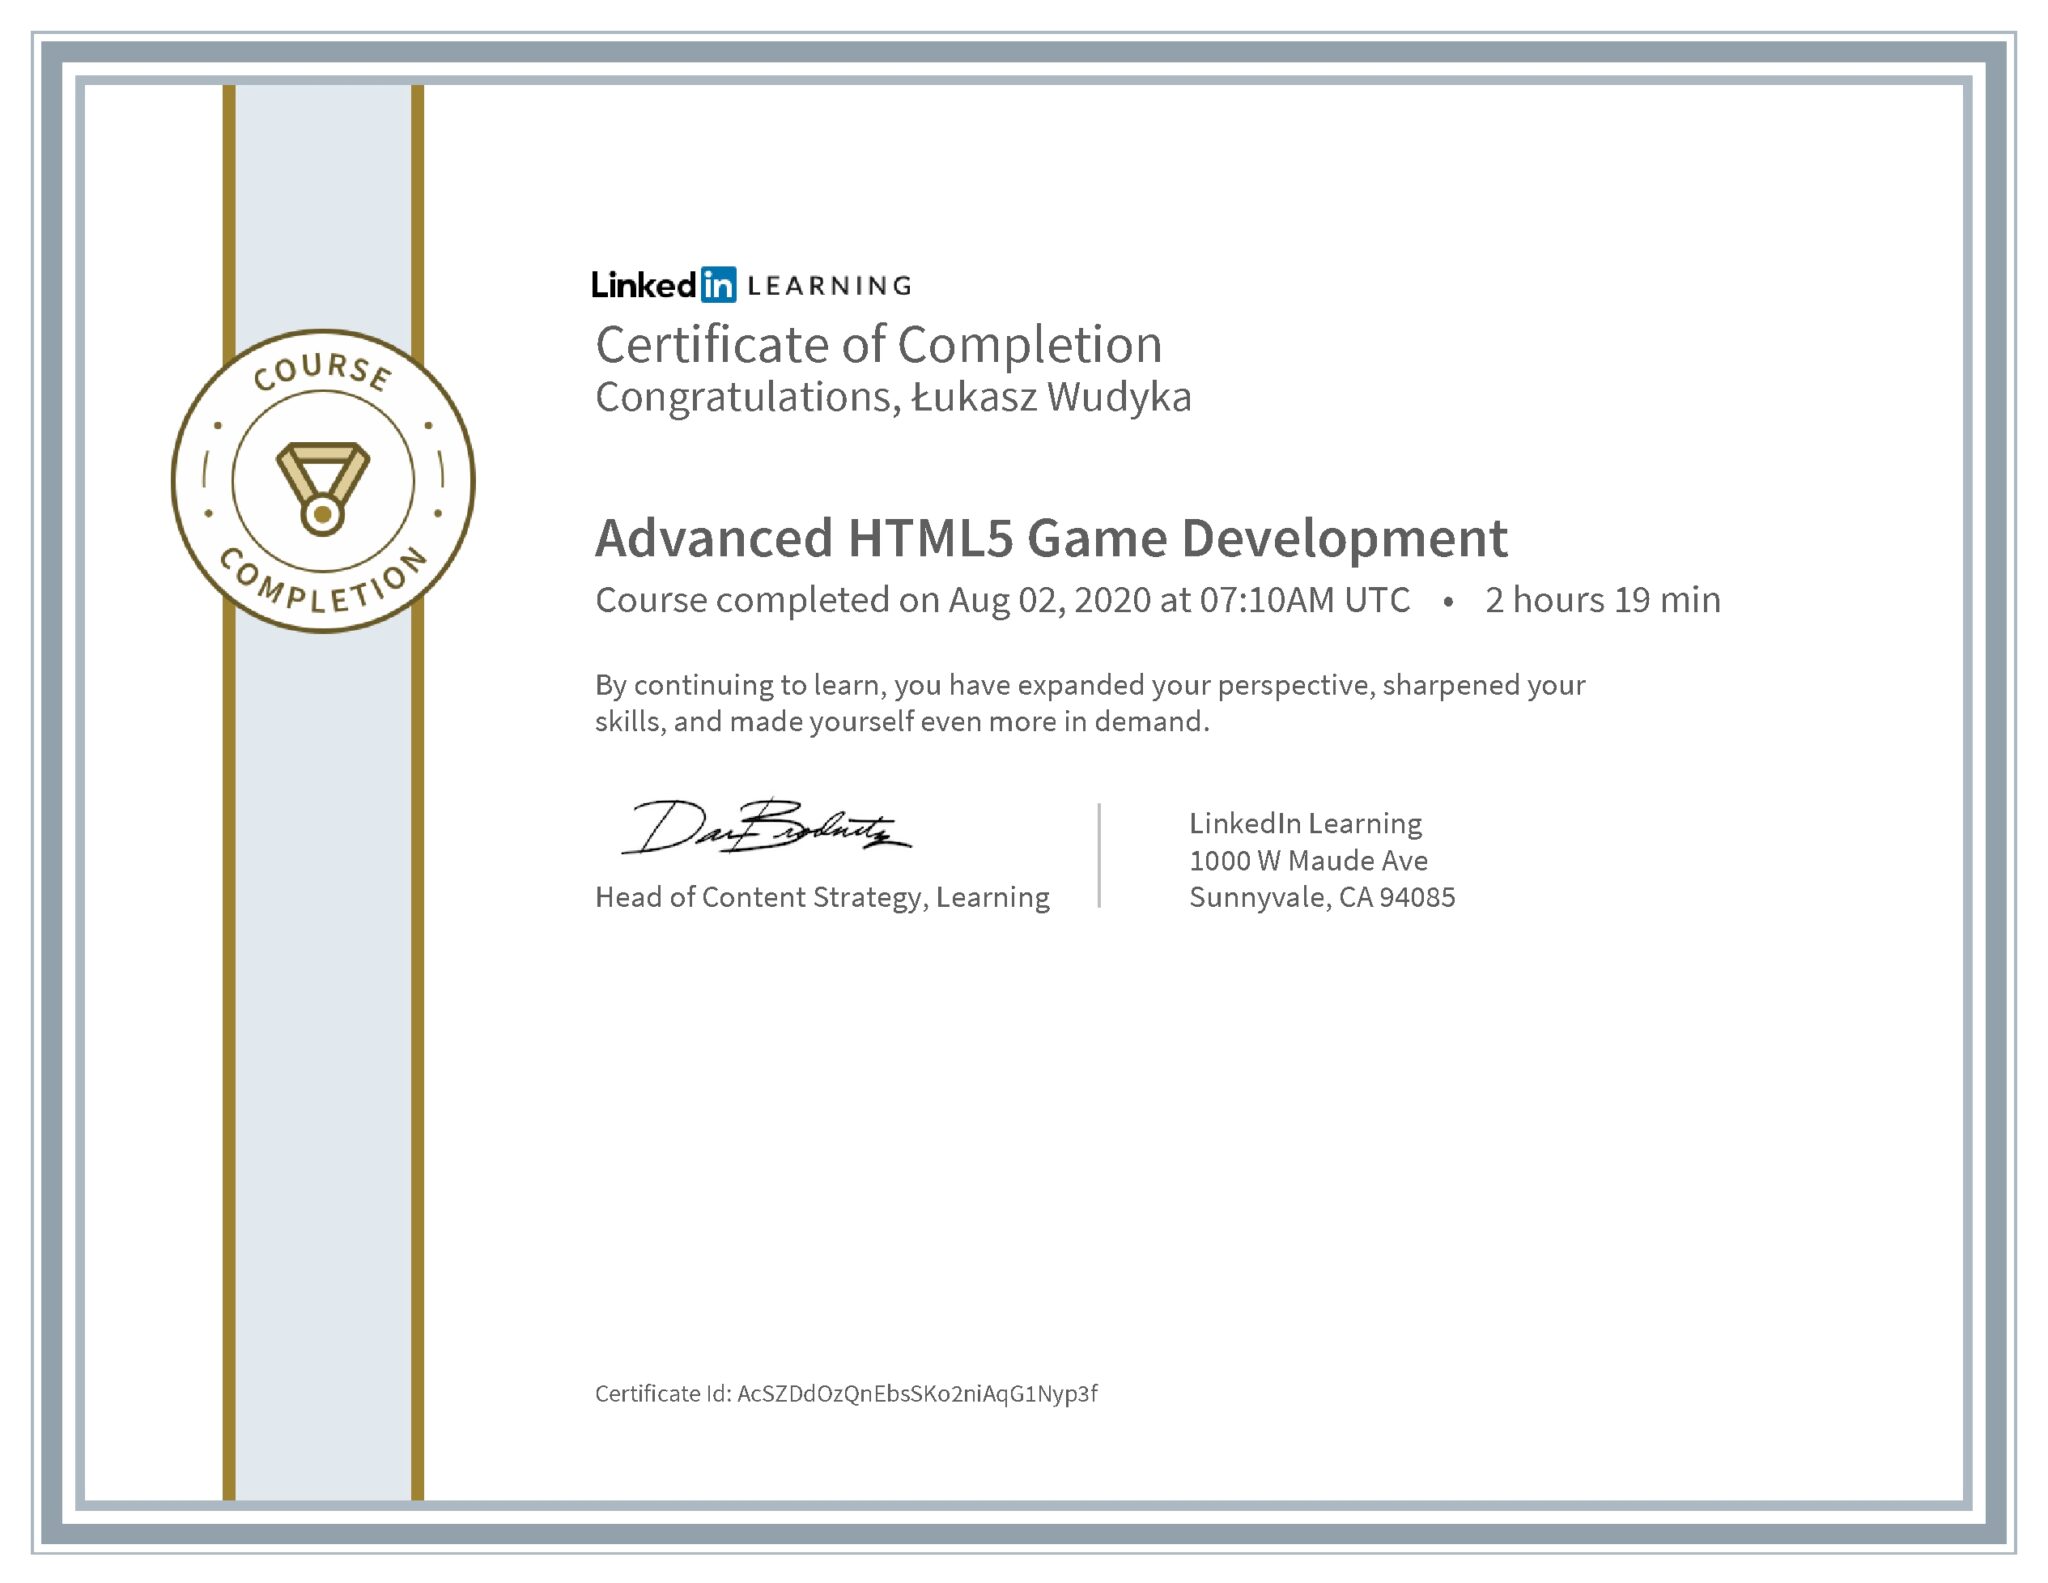 Łukasz Wudyka certyfikat LinkedIn Advanced HTML5 Game Development